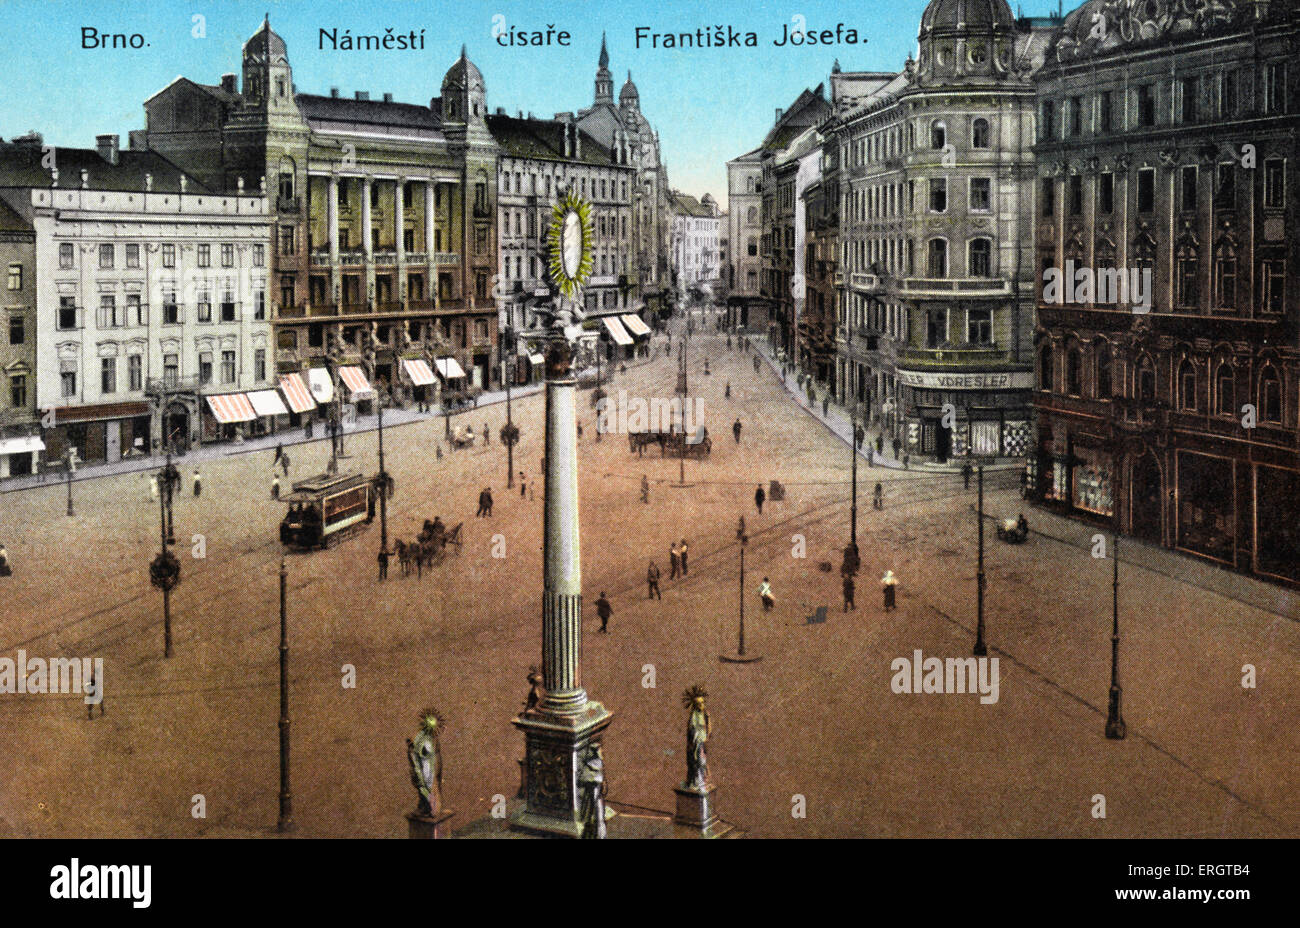 Bnro - fotografia colorata di Piazza della Libertà nella città ceca nei primi anni del ventesimo secolo. Janacek connessione. Foto Stock